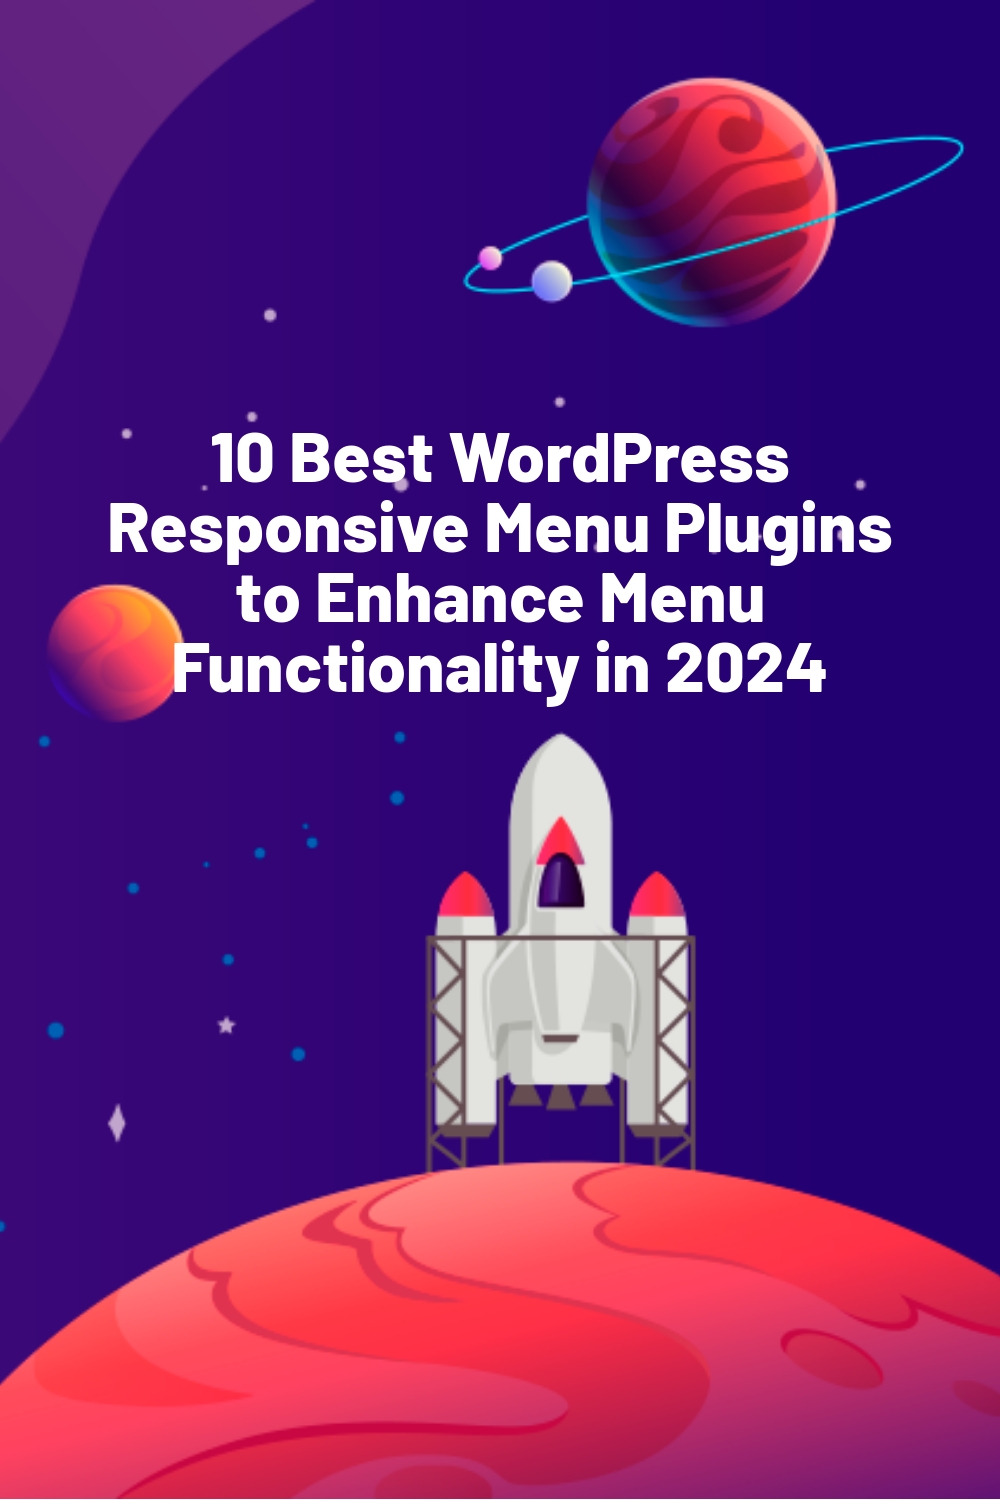 10 Best WordPress Responsive Menu Plugins to Enhance Menu Functionality in 2024